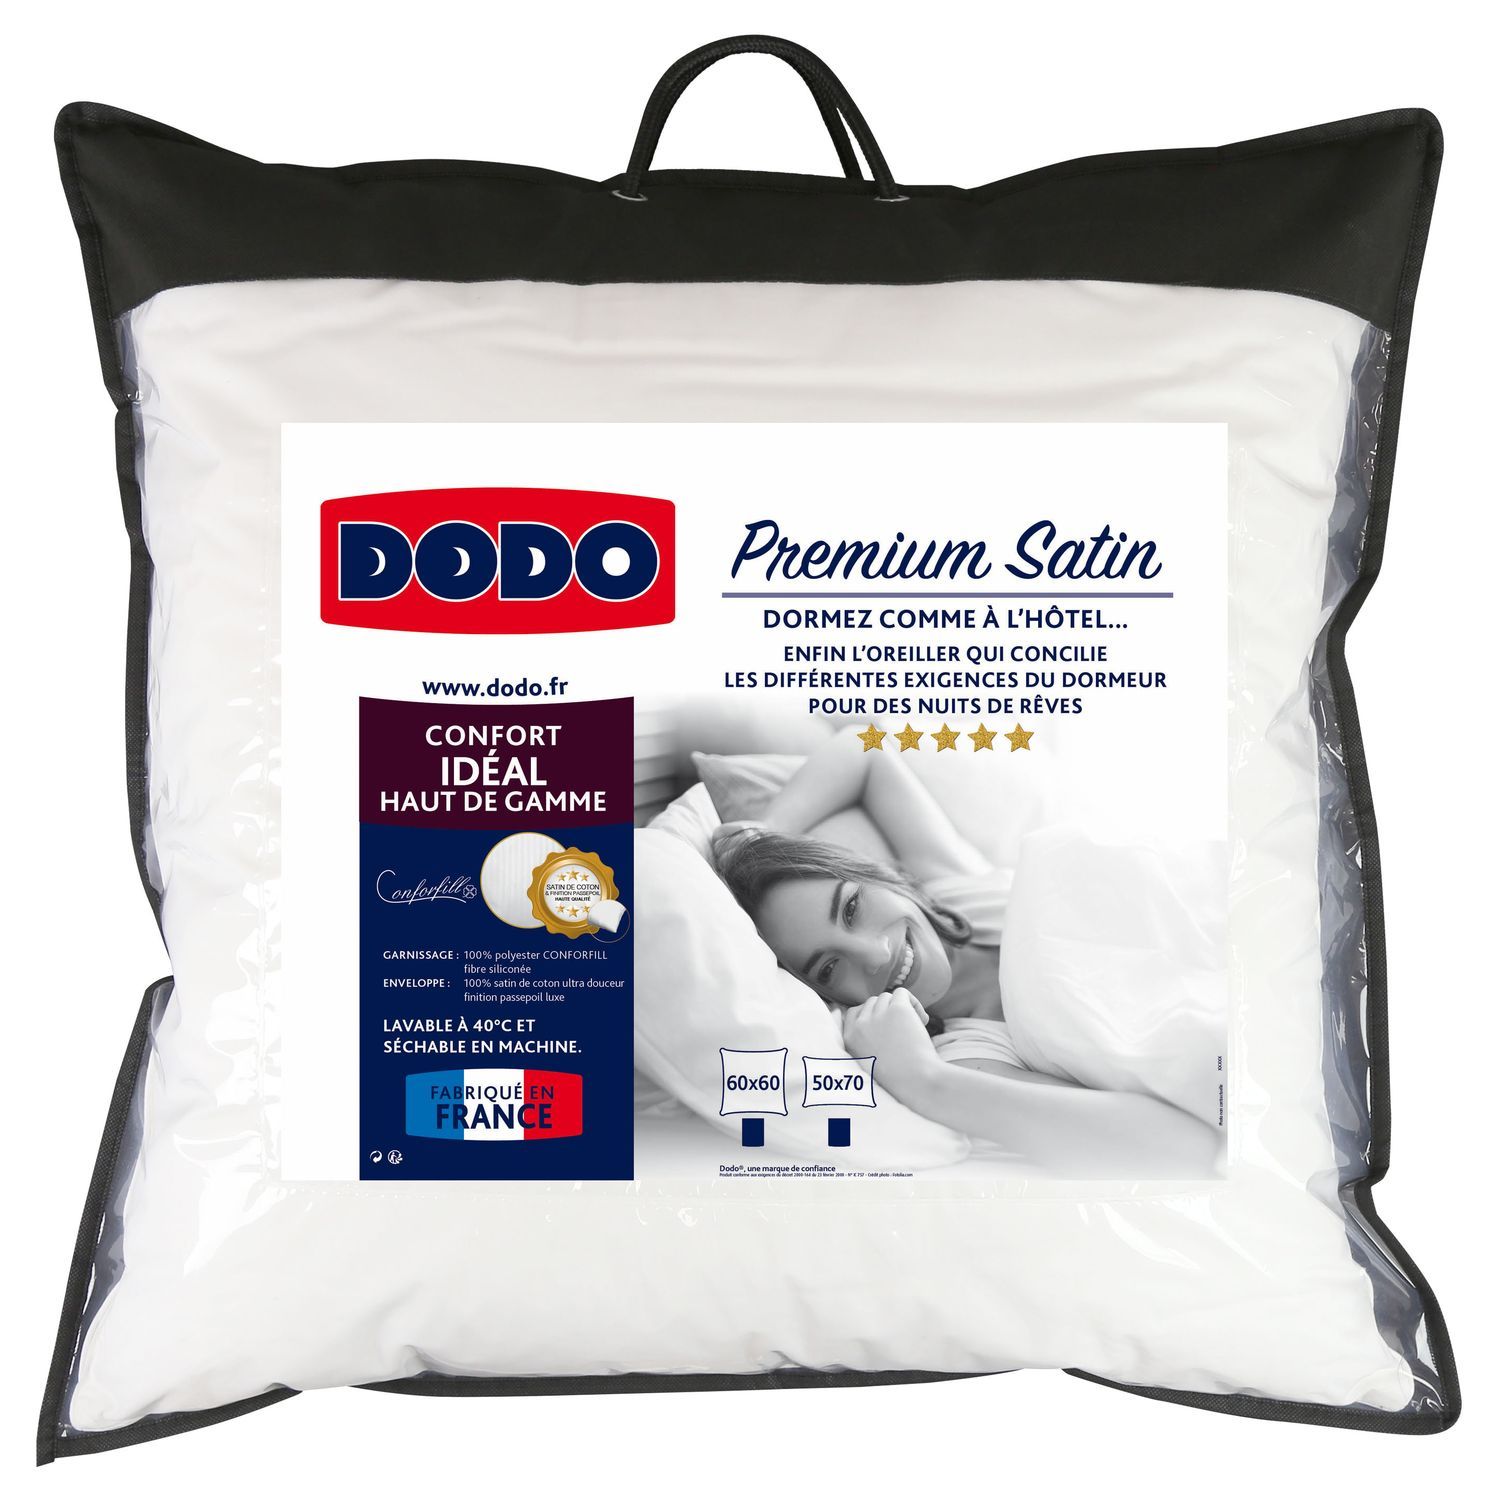 Promo Dodo oreiller max'air 60x60 cm chez BUT